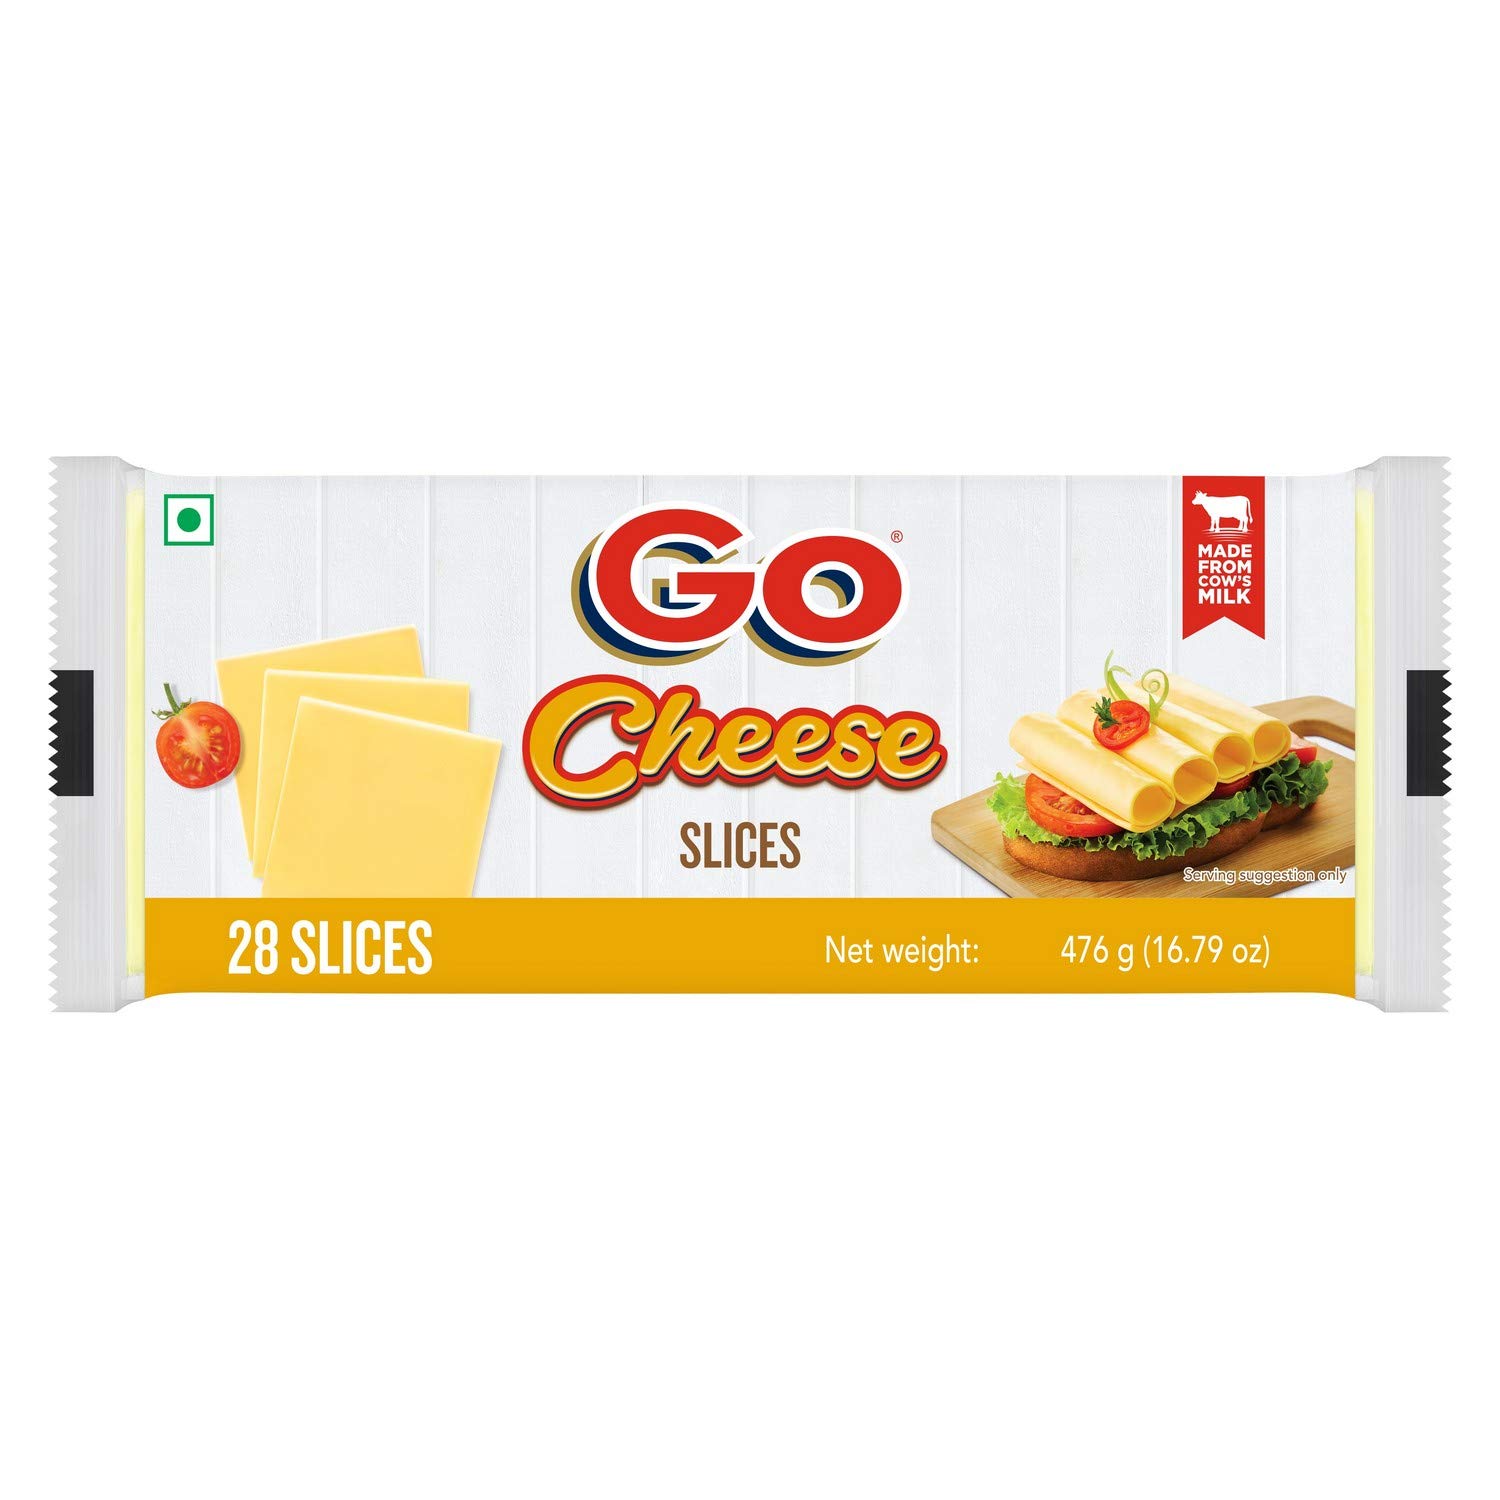 Go Cheese – Plain, 476g Pack